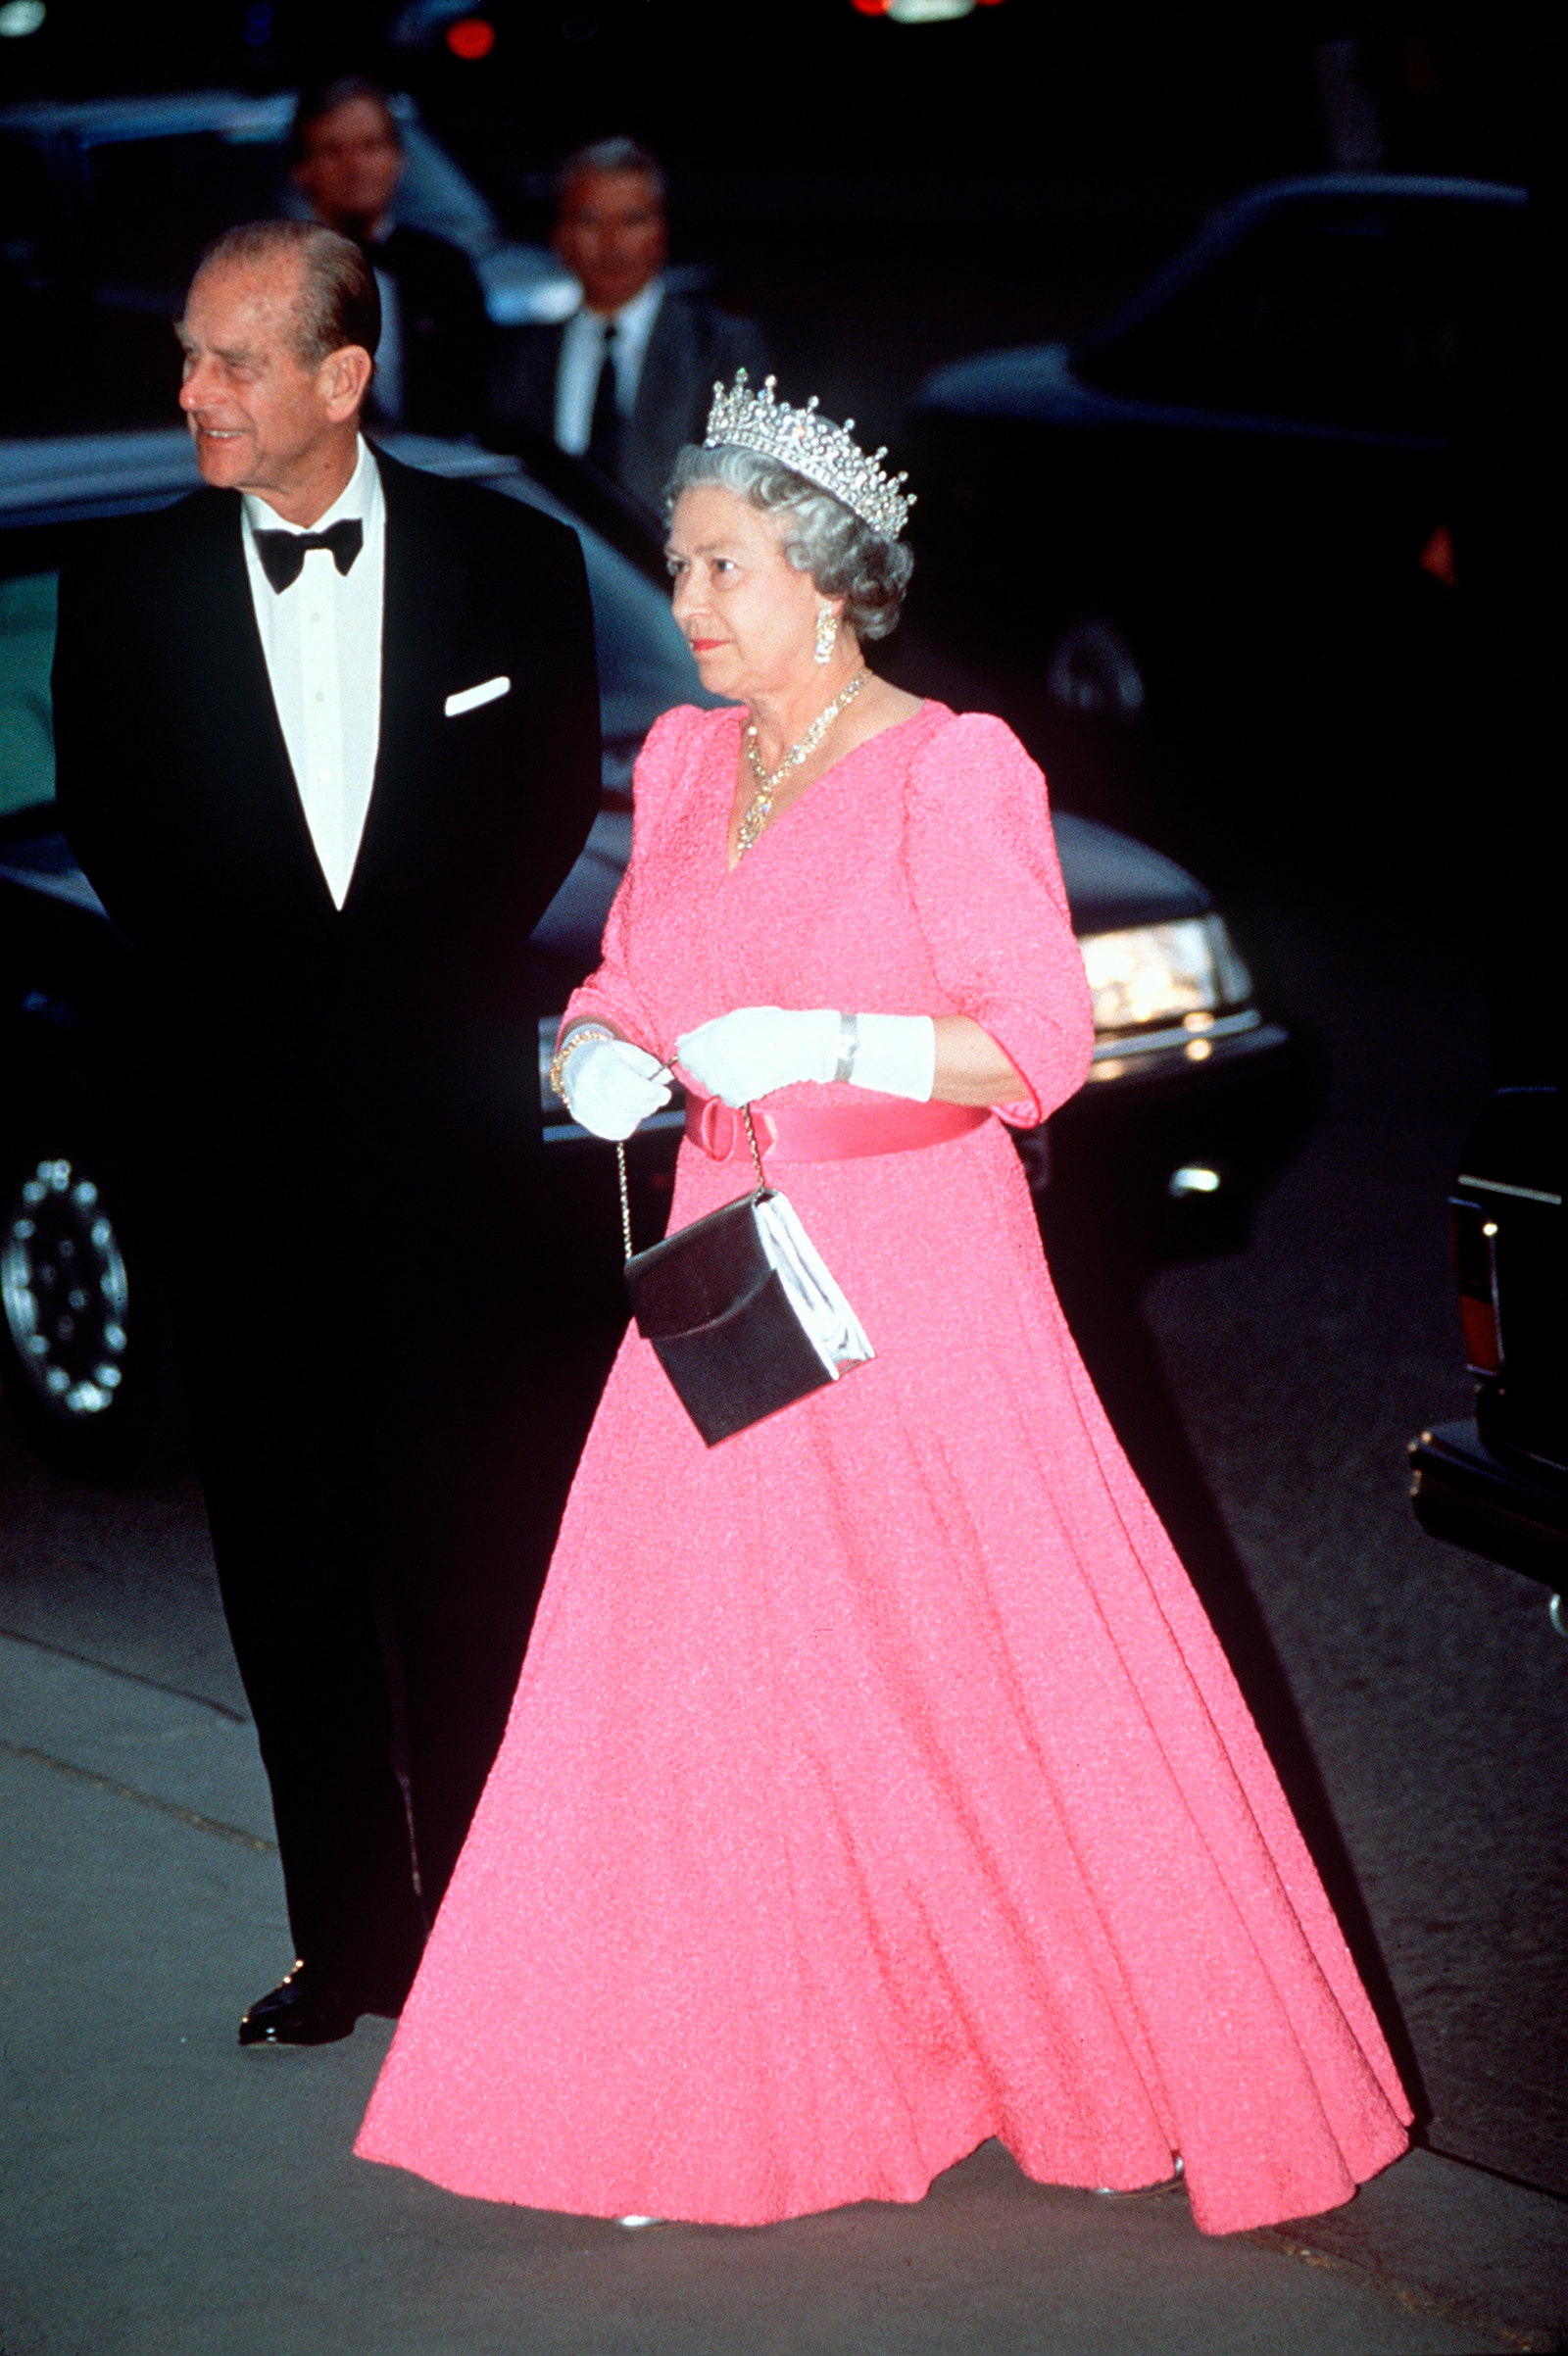 Bí mật đằng sau gu thời trang của Nữ hoàng Anh trong 70 năm trị vì: Dùng trang phục để thể hiện quyền lực - Ảnh 17.